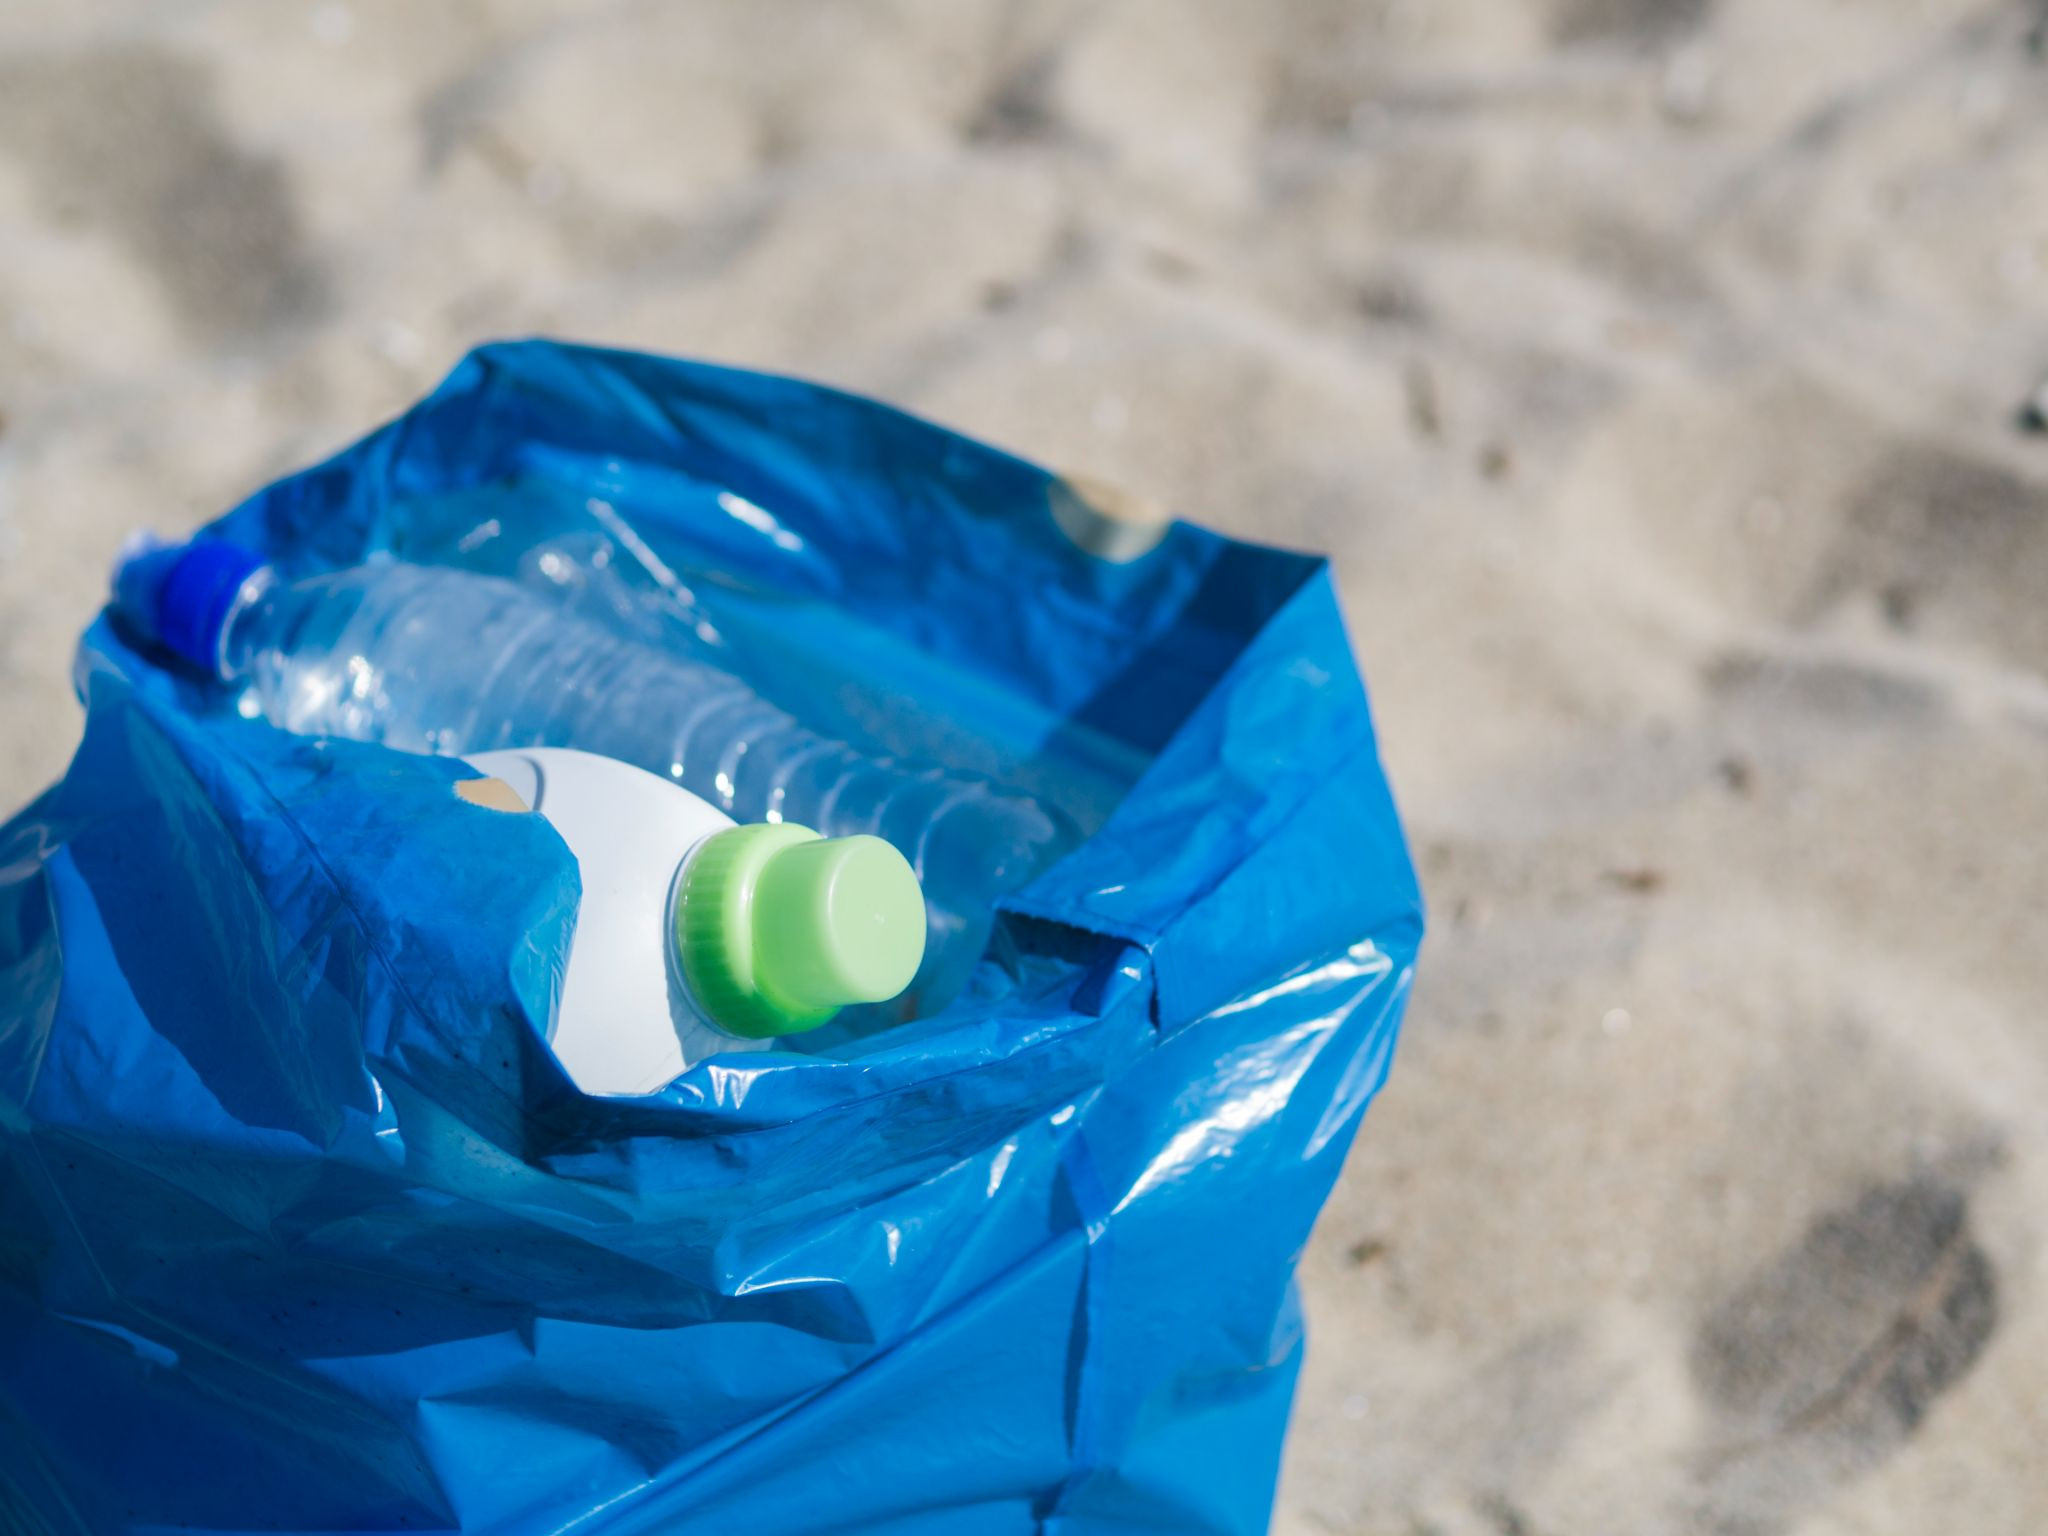  Cada español consume 22,7 kg de plástico de un solo uso al año 